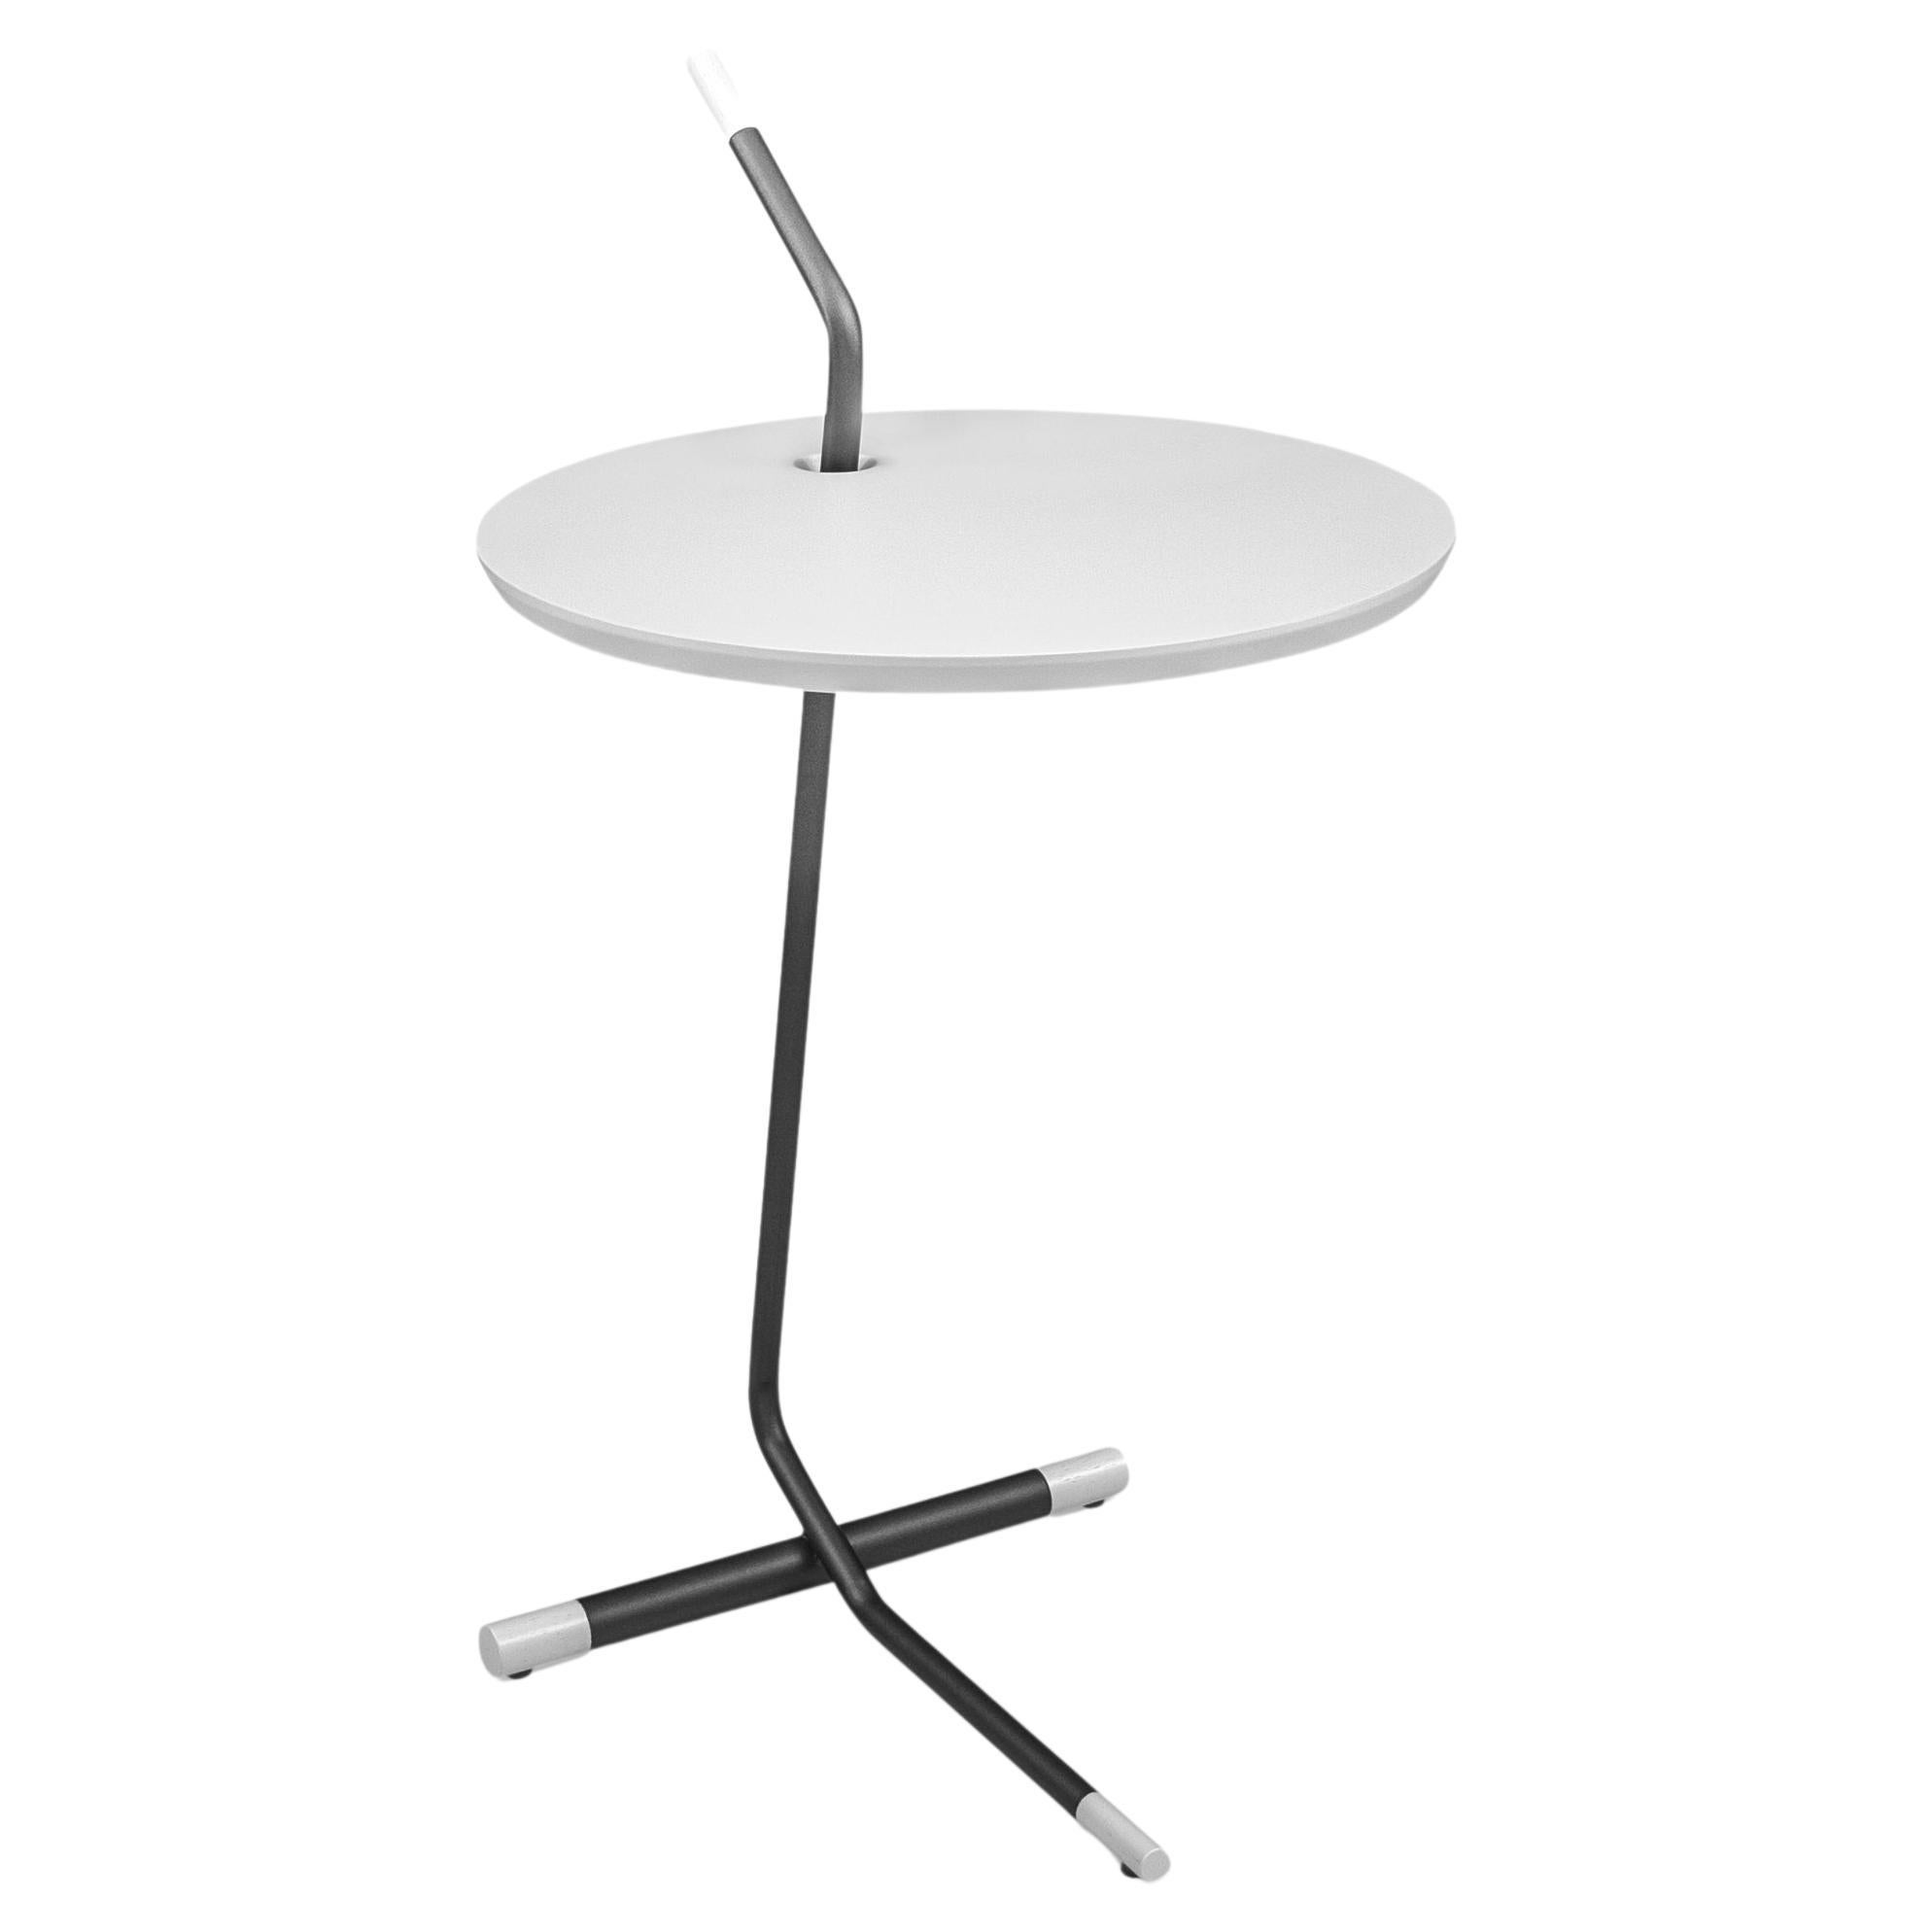 Uultis Design Side Tables